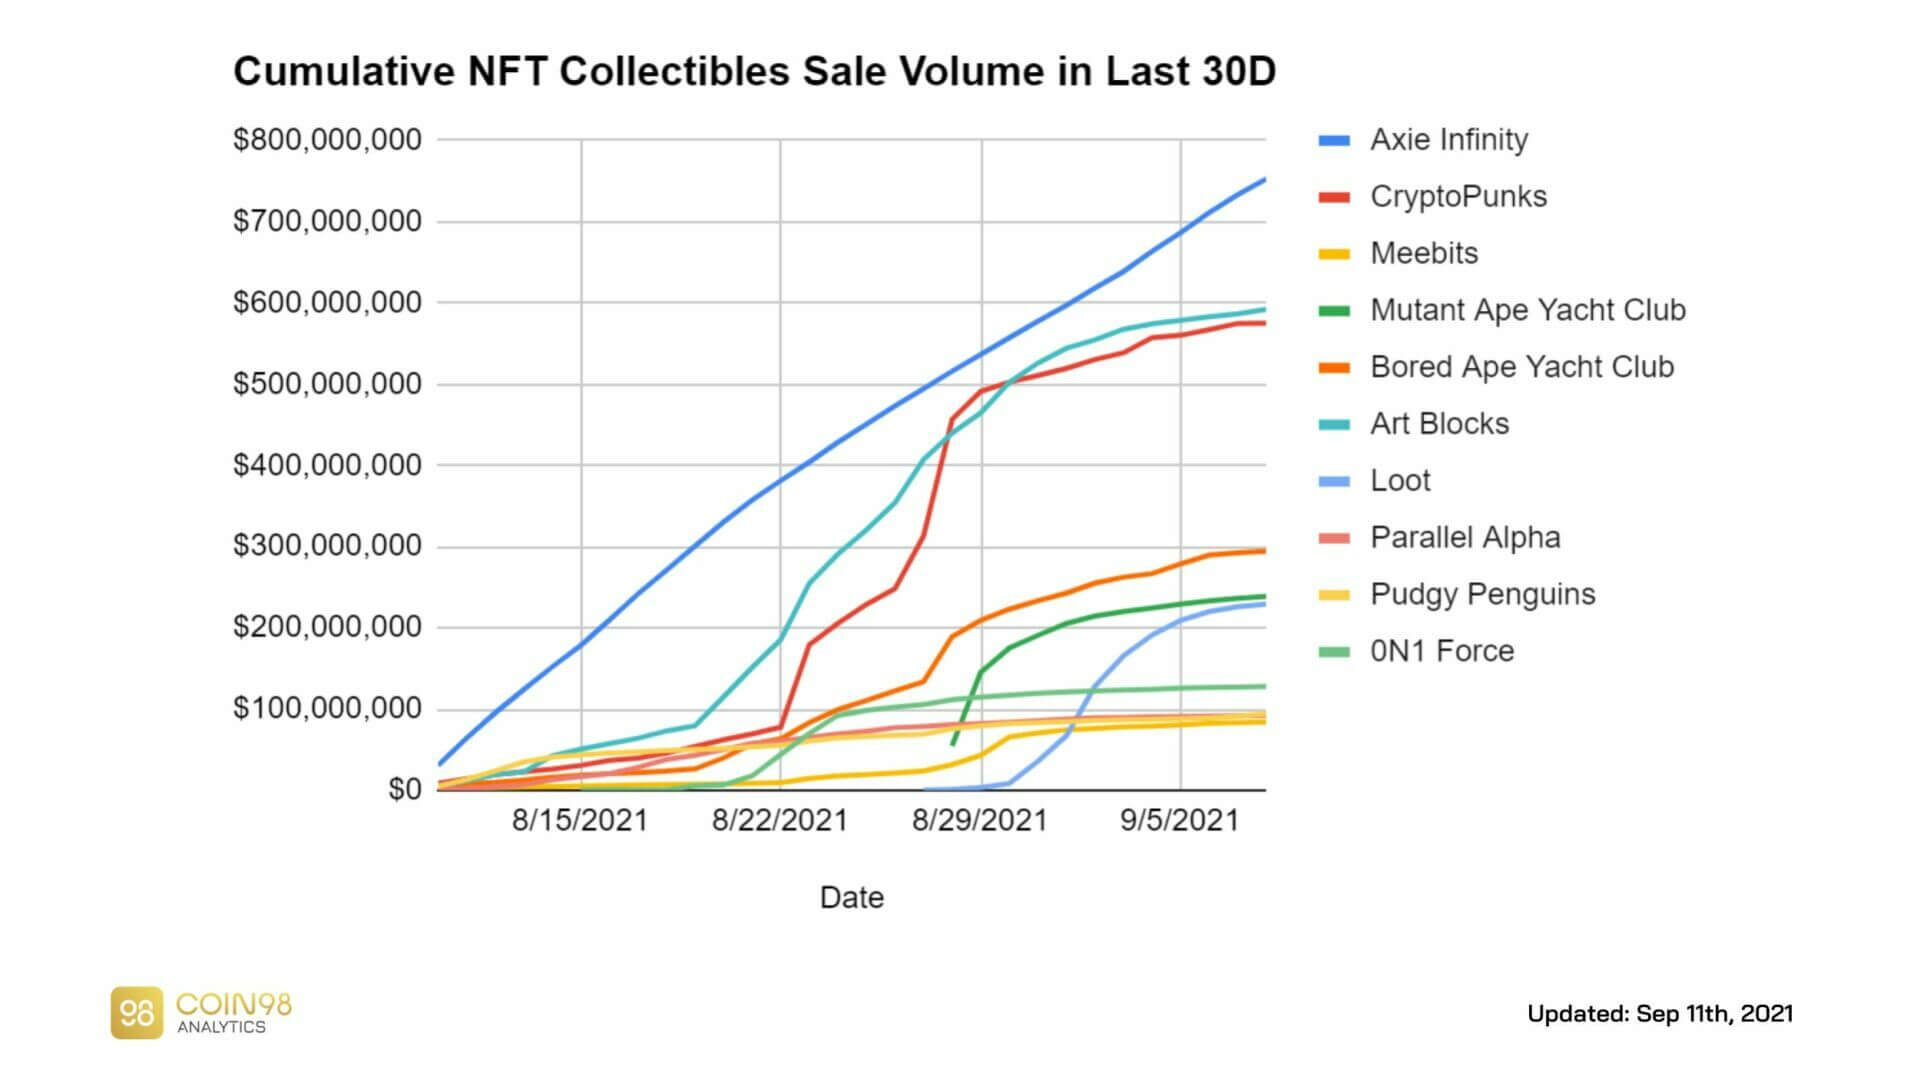 Volume cumulé des ventes de NFT entre août et septembre 2021 montrant la dominance du projets play to earn Axie Infinity (750 millions de dollars de ventes), des CryptoPunks (600 millions de dollars de ventes) et du projet Art Block (600 millions de dollars de ventes)